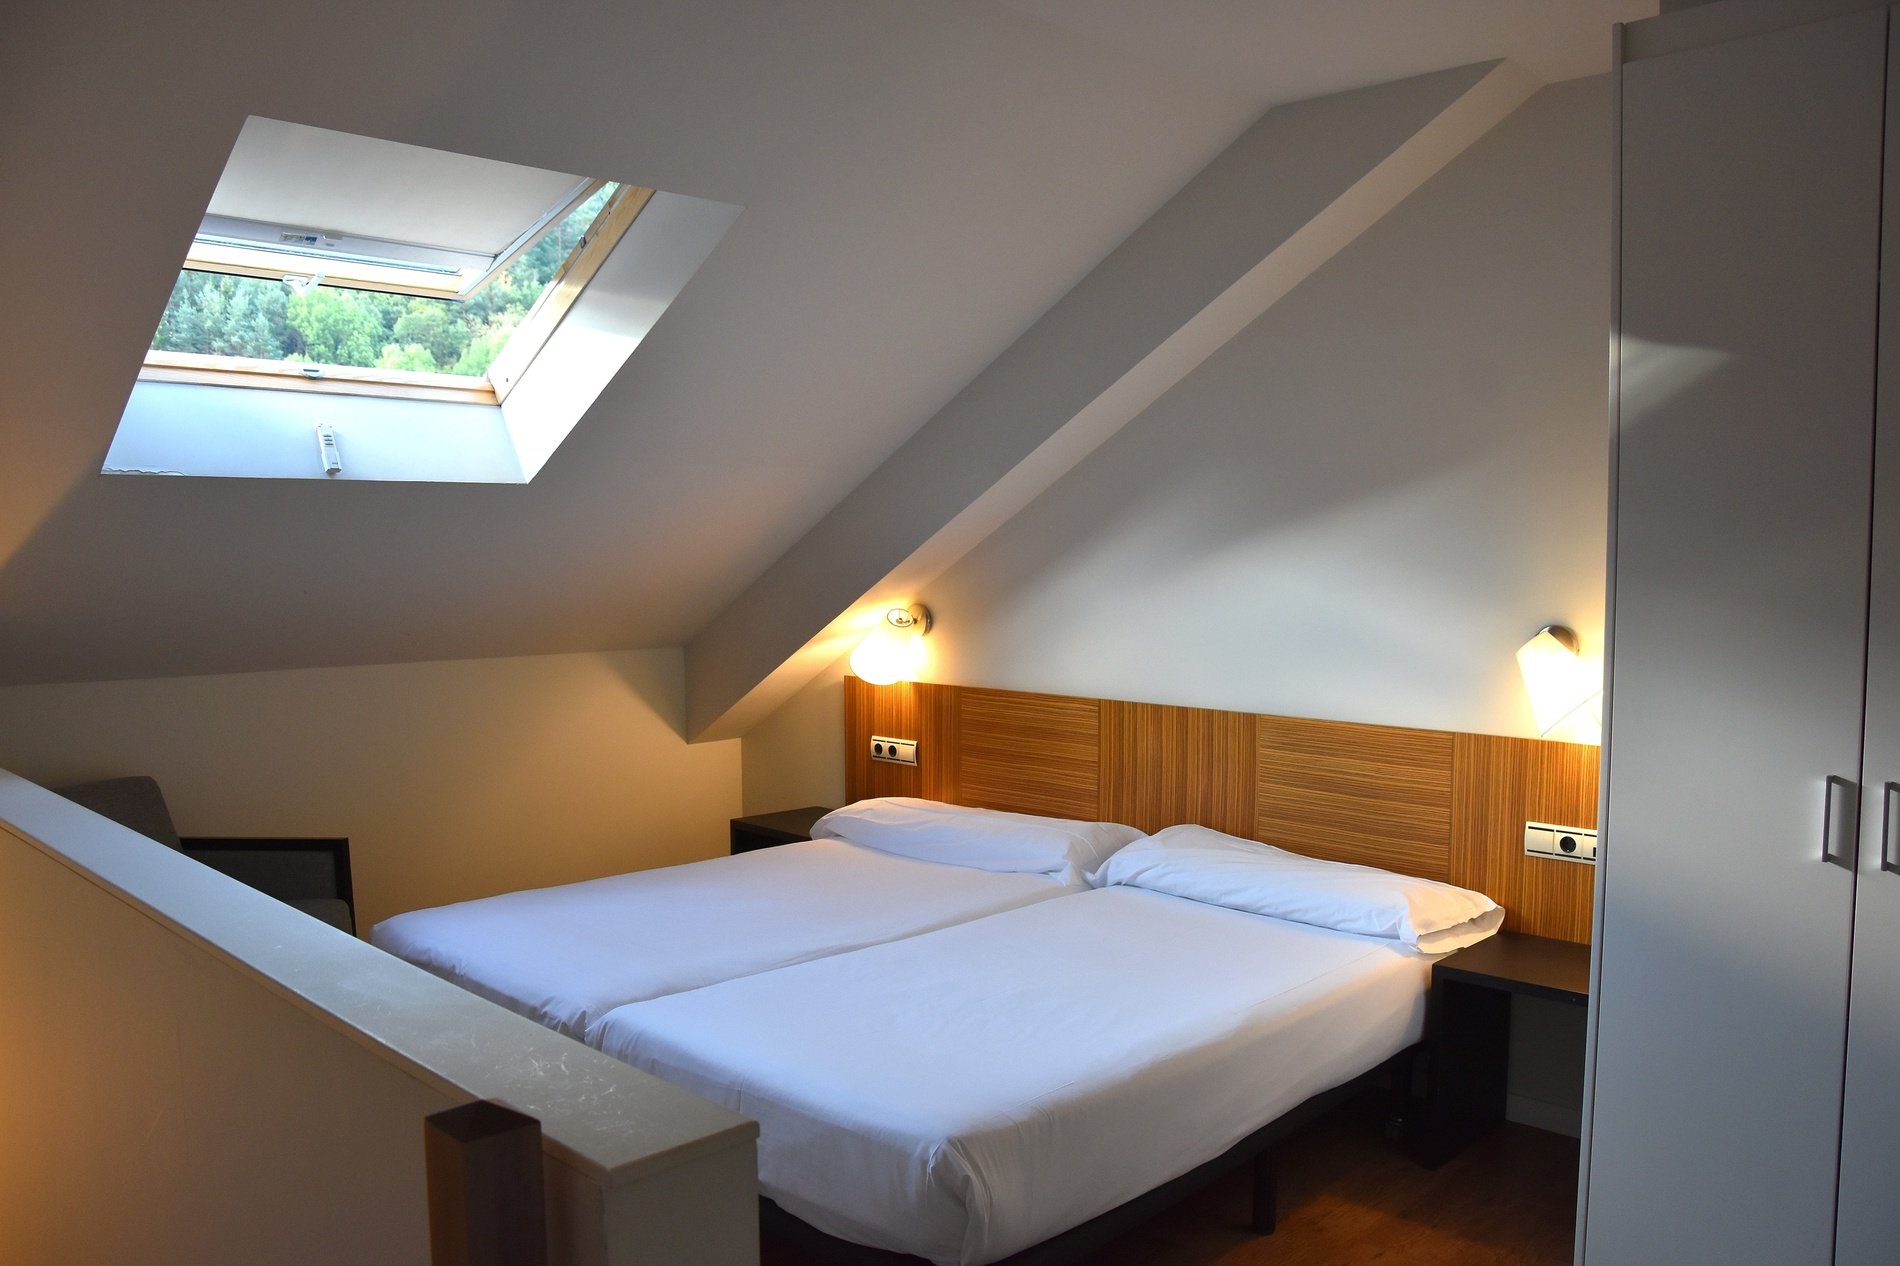 una habitación con dos camas y una ventana en el techo